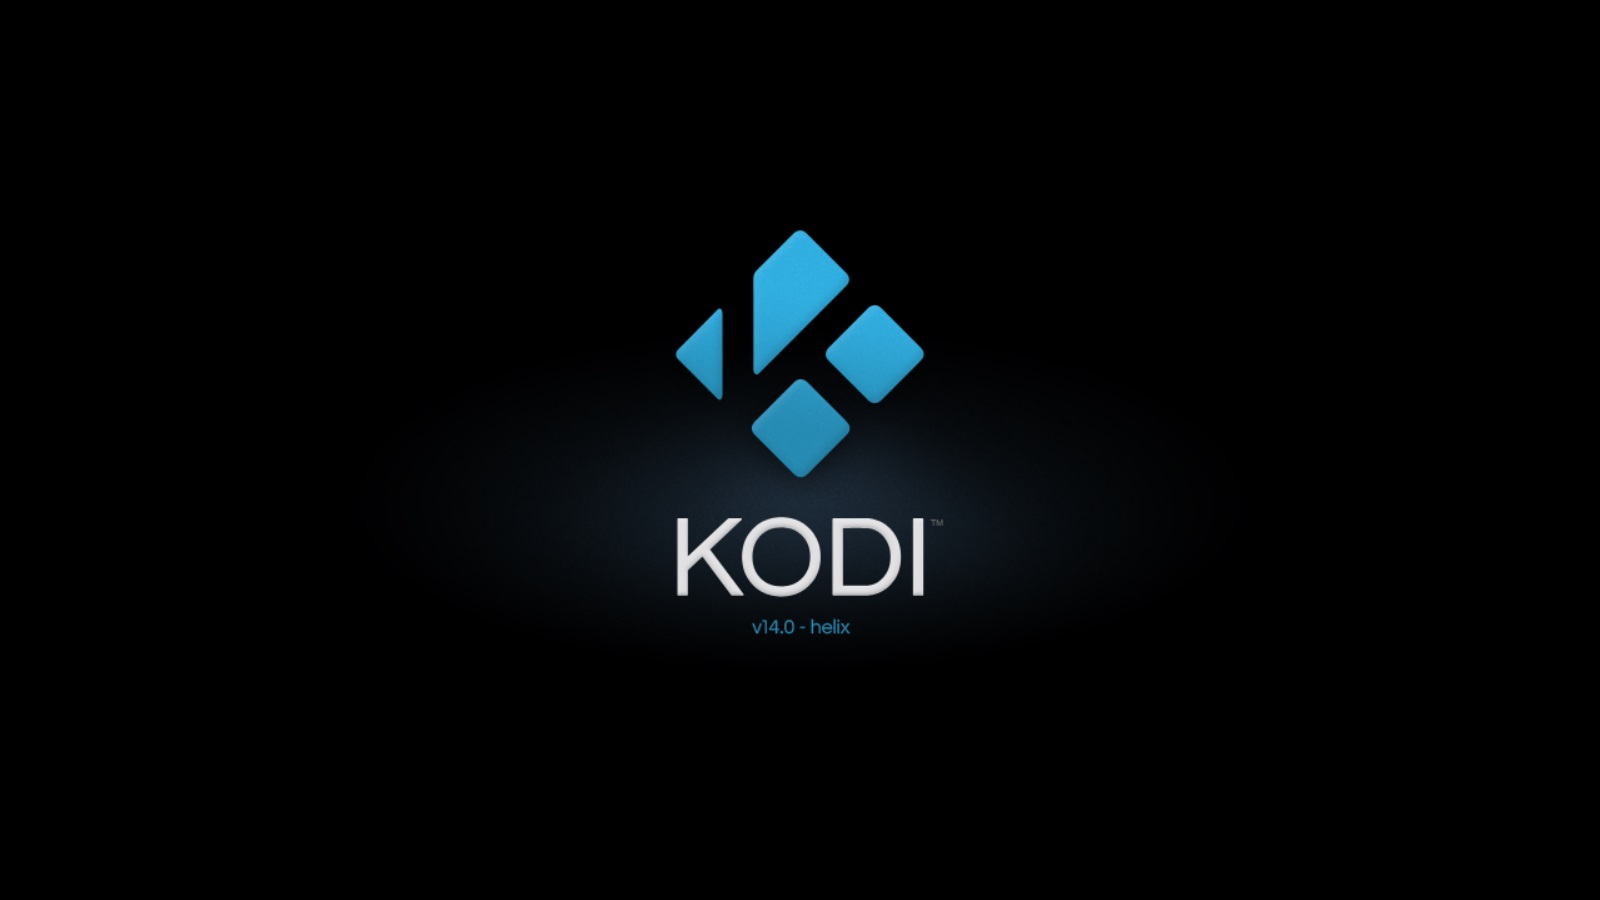 Kodi Background Main Changes I